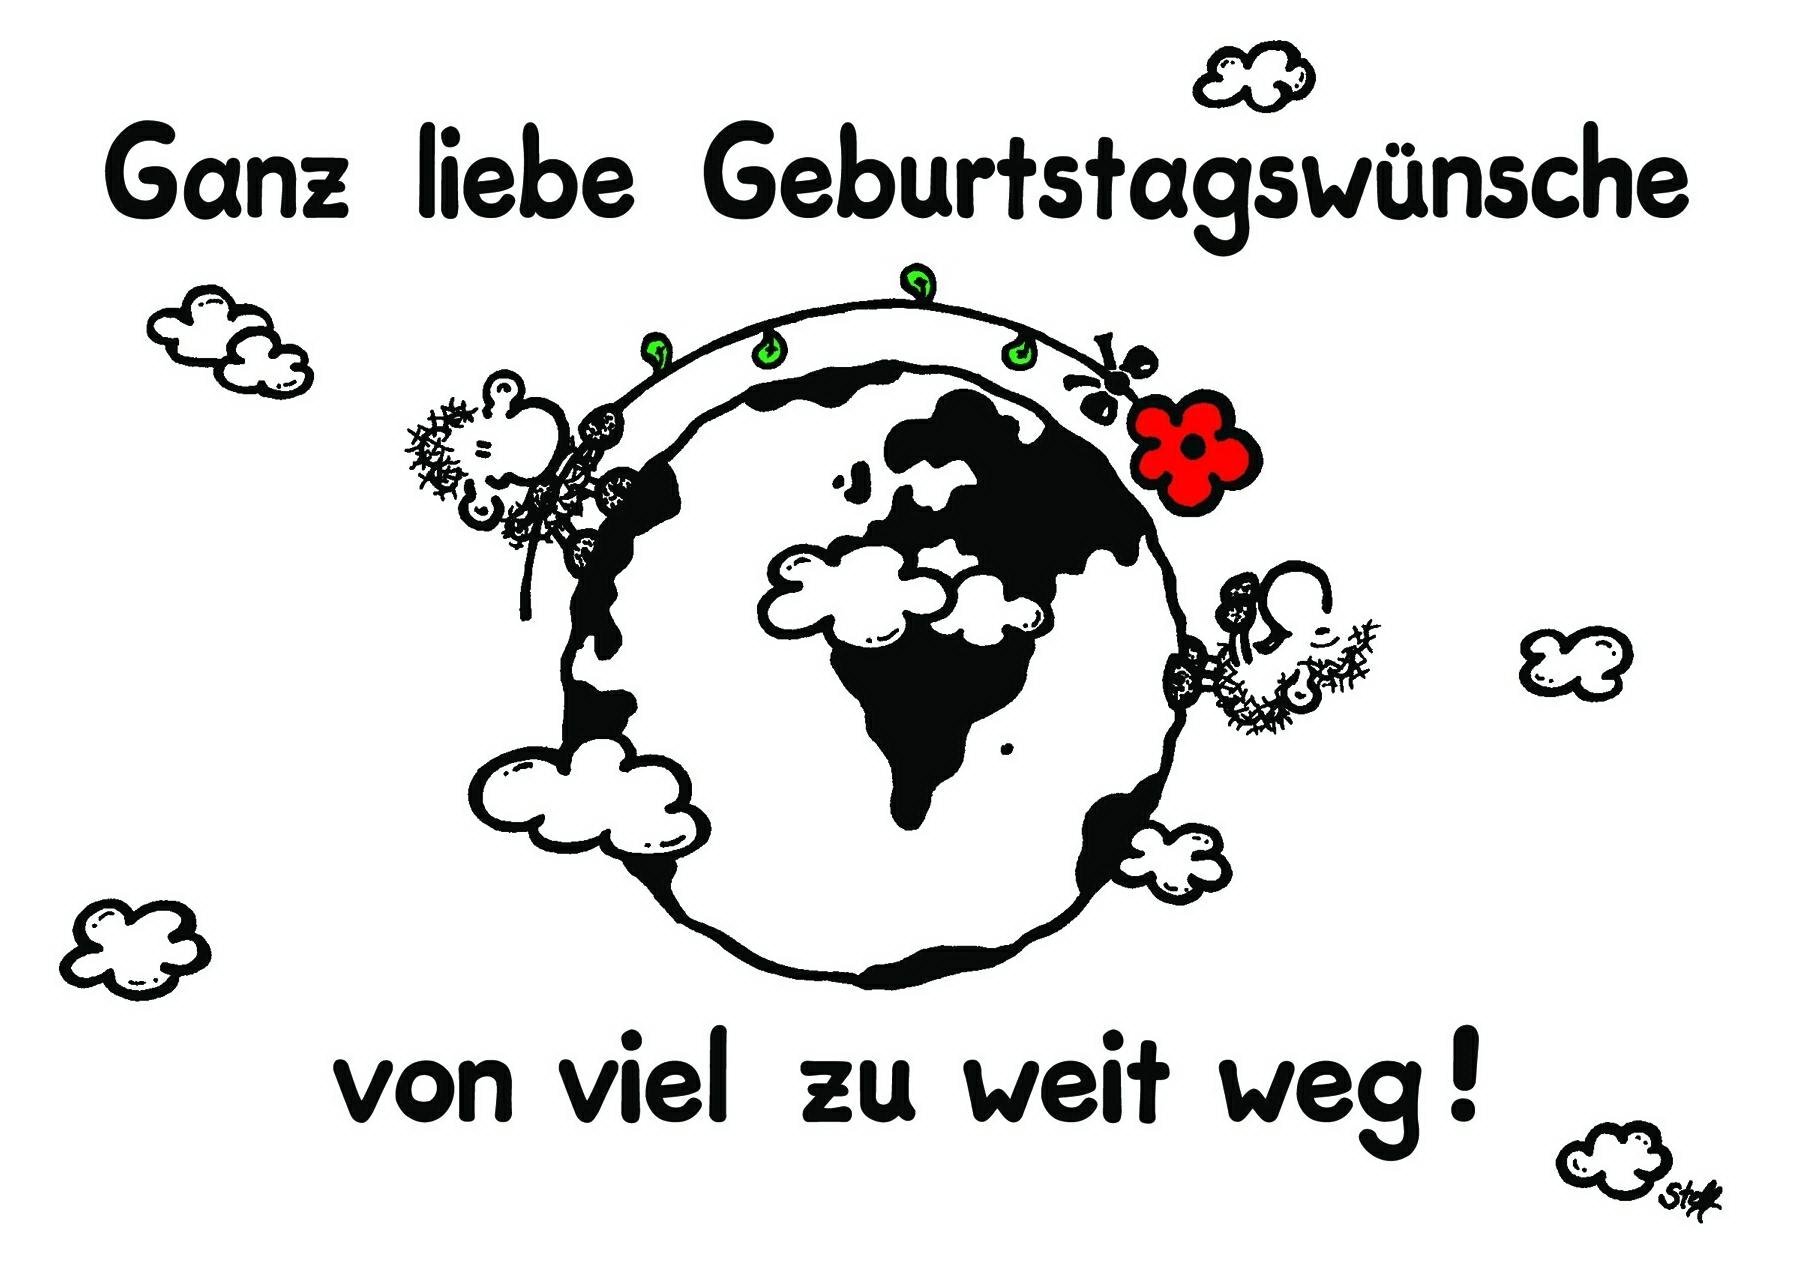 Поздравление мужчине на немецком языке. С днём рождения на немецком языке. Открытка с днём рождения на немецком языке. Поздравления с днём рождения на немецком языке. Немецкие открытки с днем рождения.